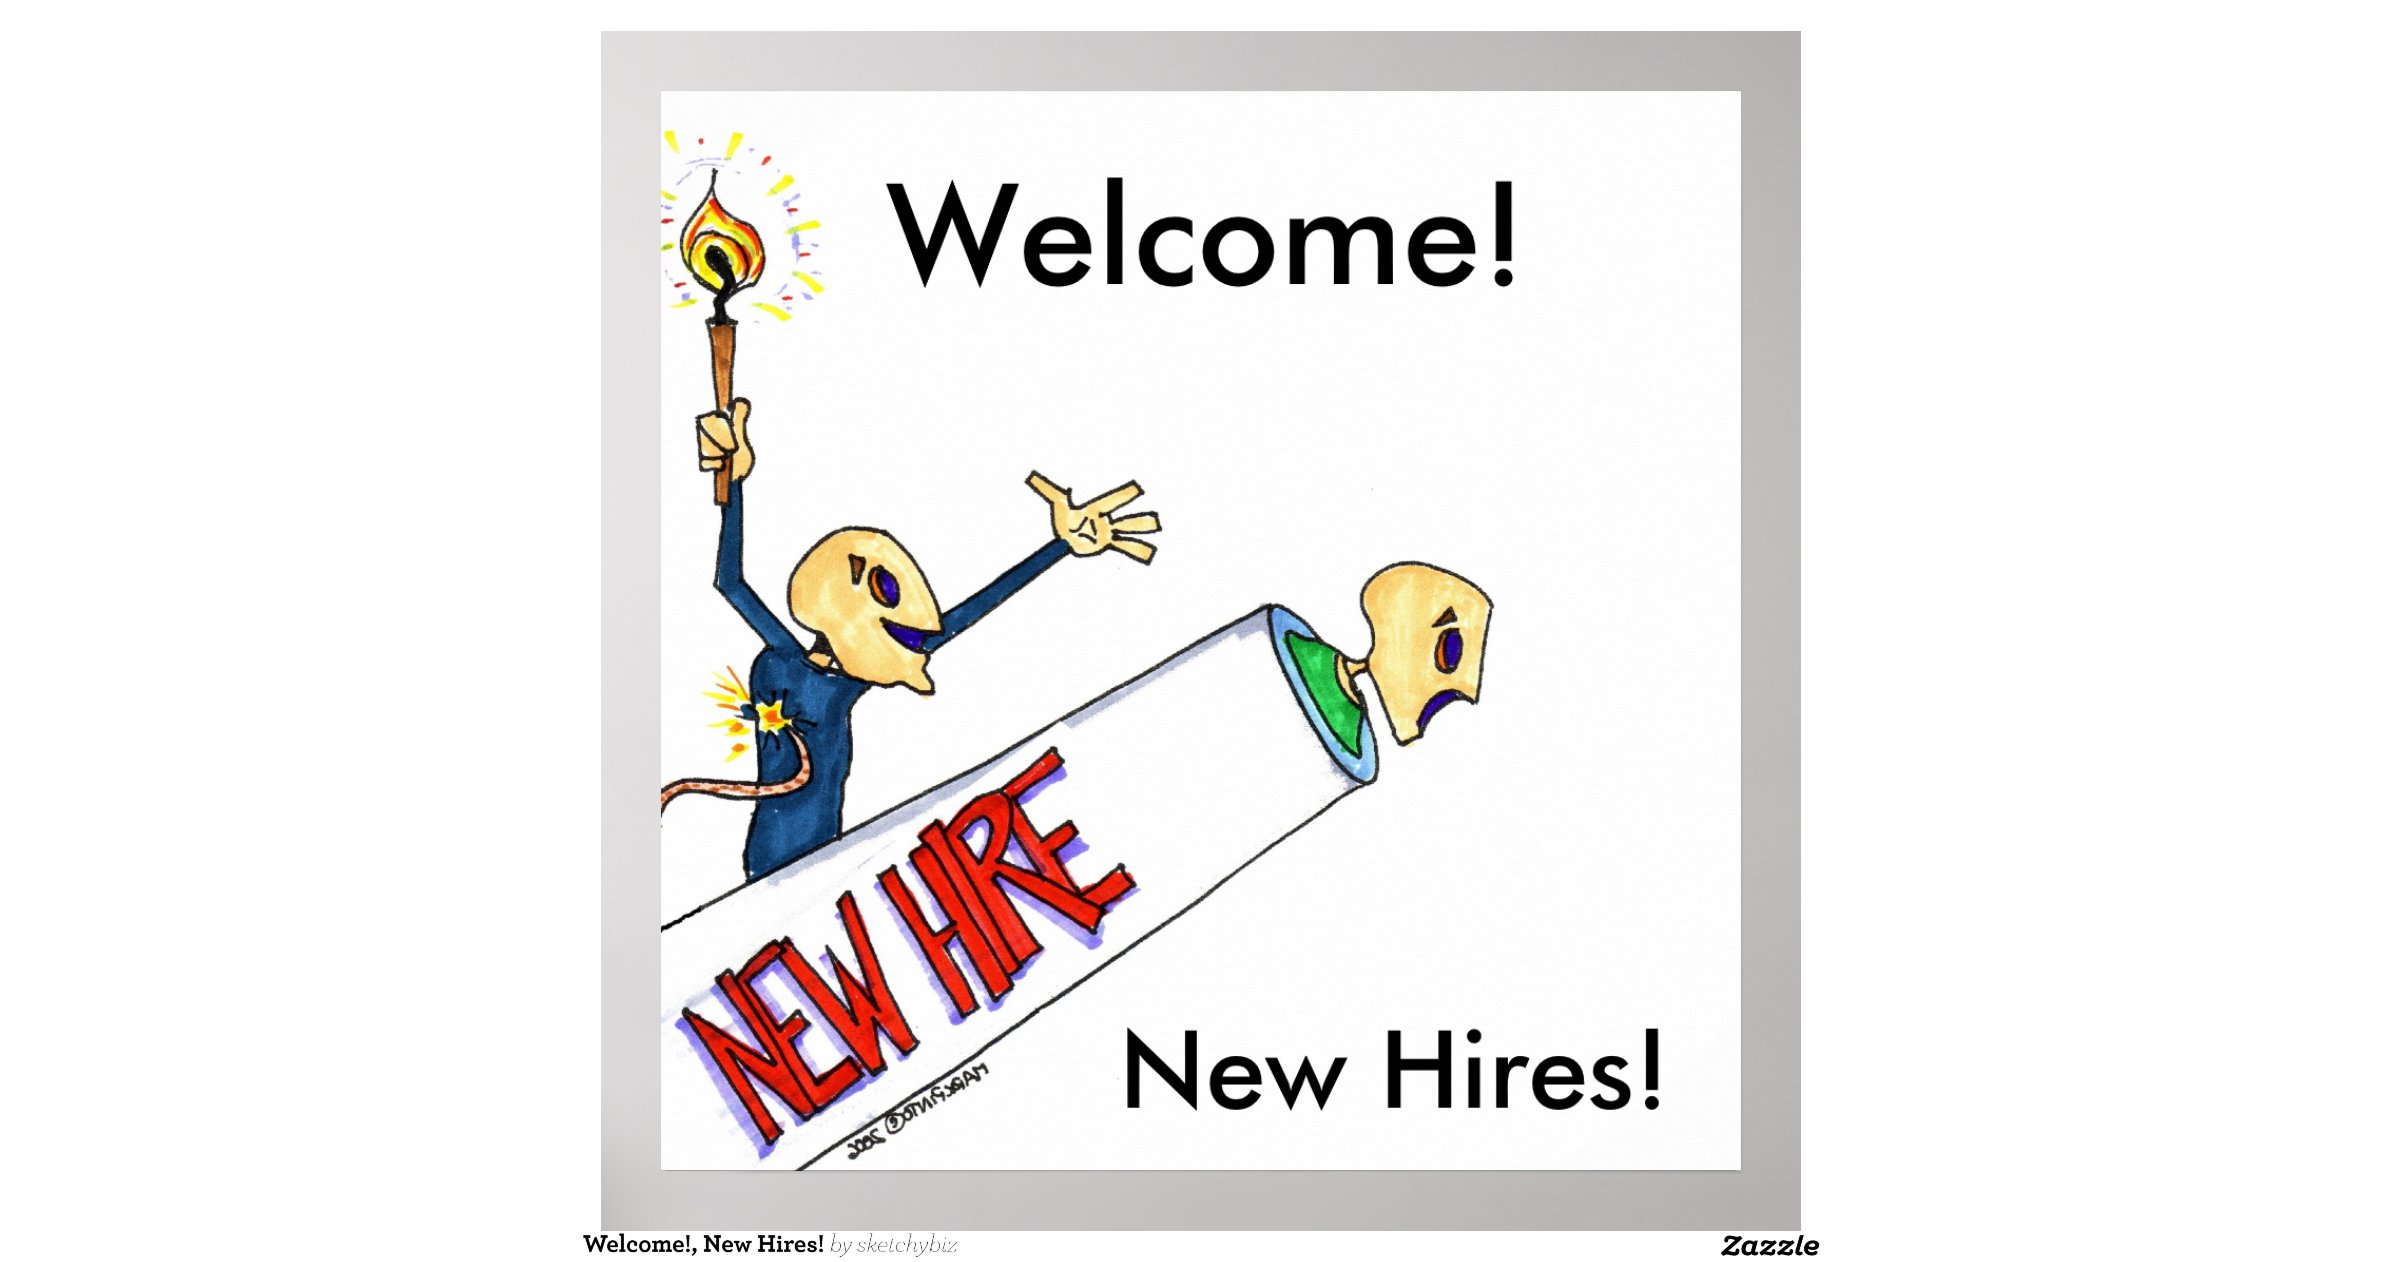 welcome_new_hires_poster-re15947bc913048e8a17d168eec94f625_w2g_8byvr